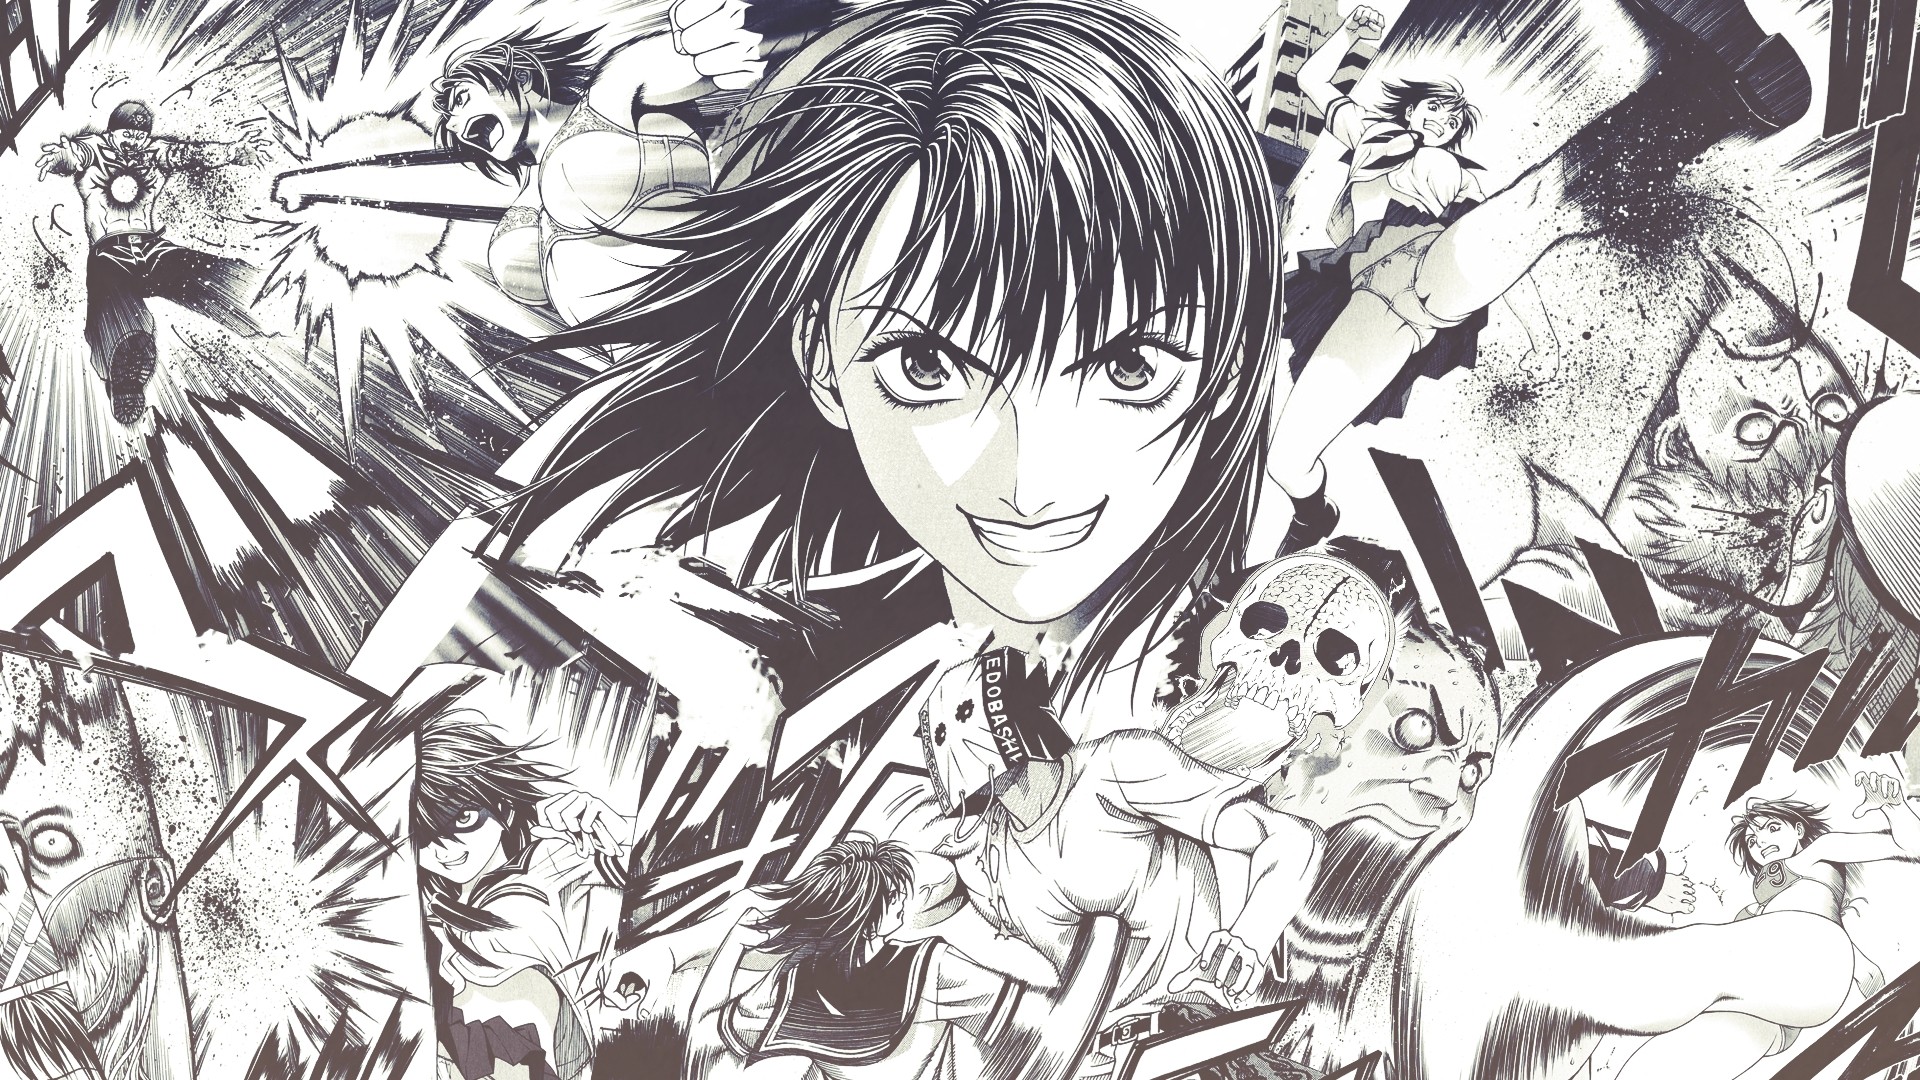 Manga Wallpaper Free Download